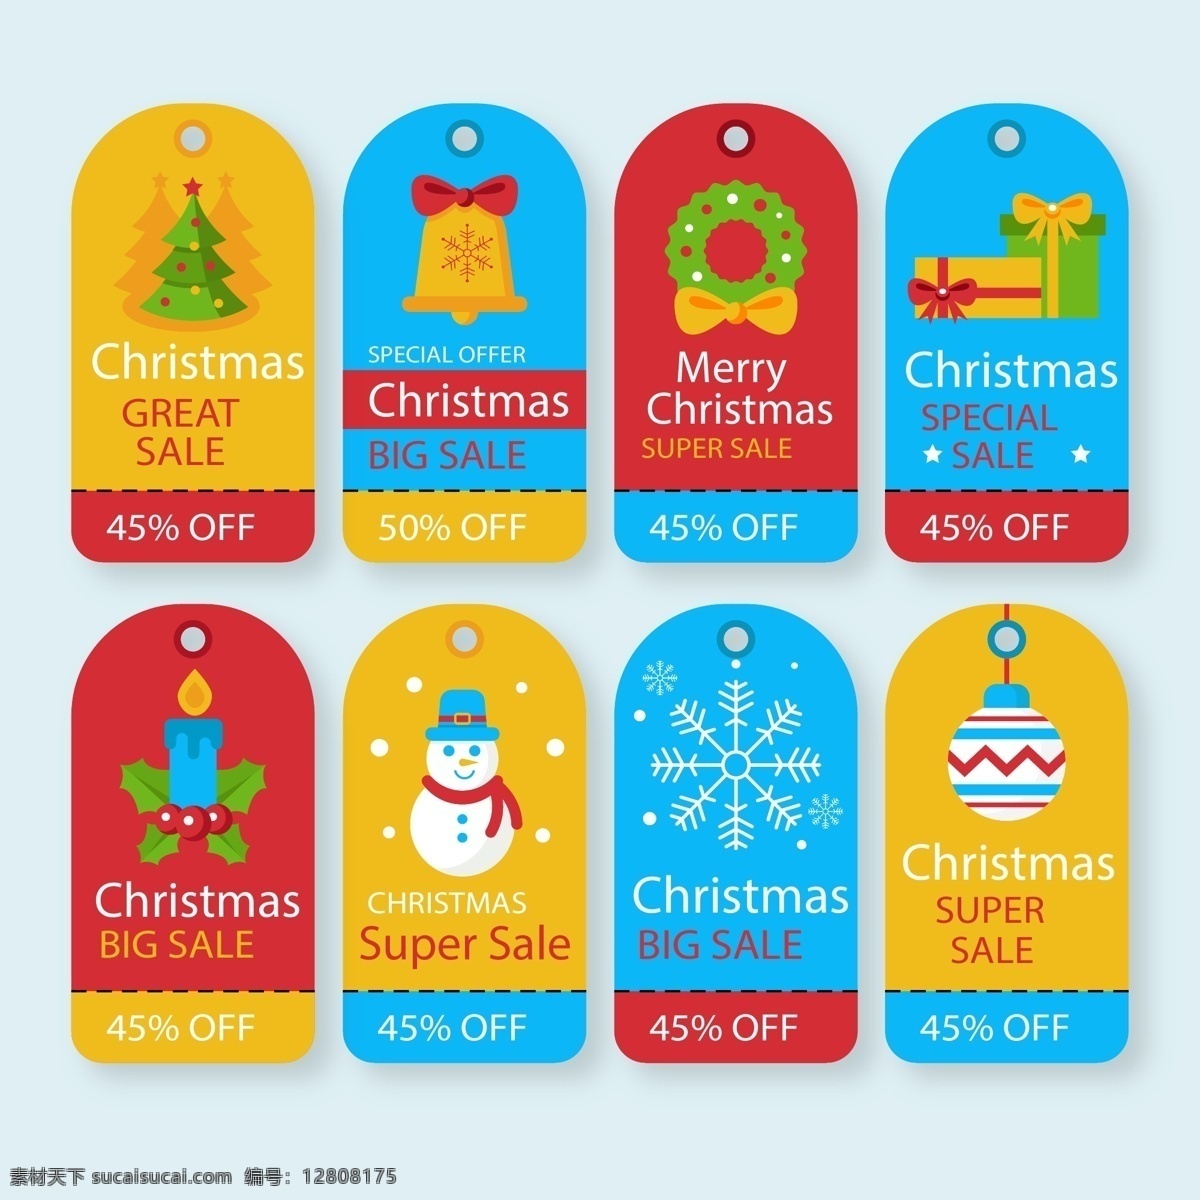 彩色 圣诞节 标签 矢量 雪花 礼物 矢量素材 圣诞树 蜡烛 铃铛 雪人 花环